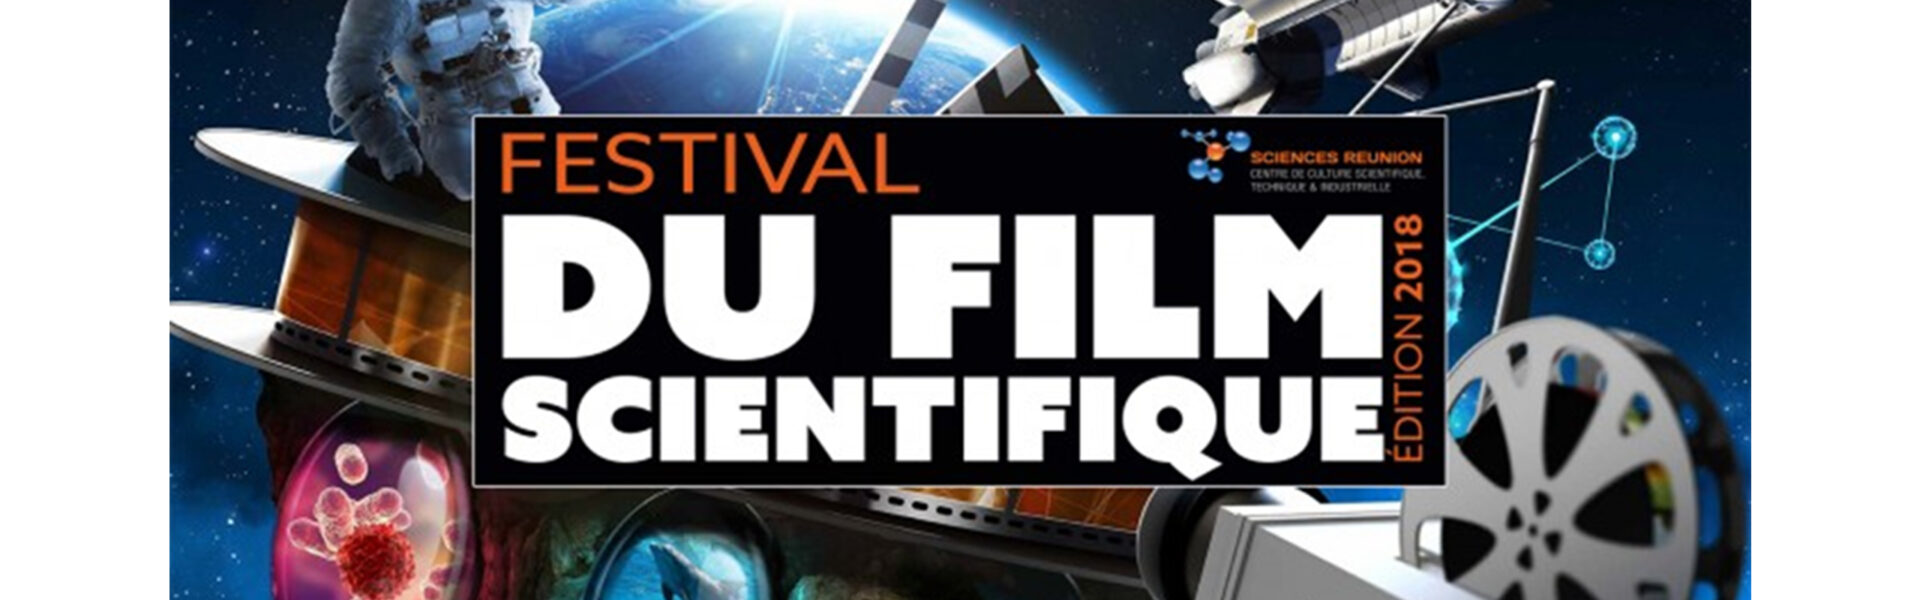 Le Festival du Film Scientifique